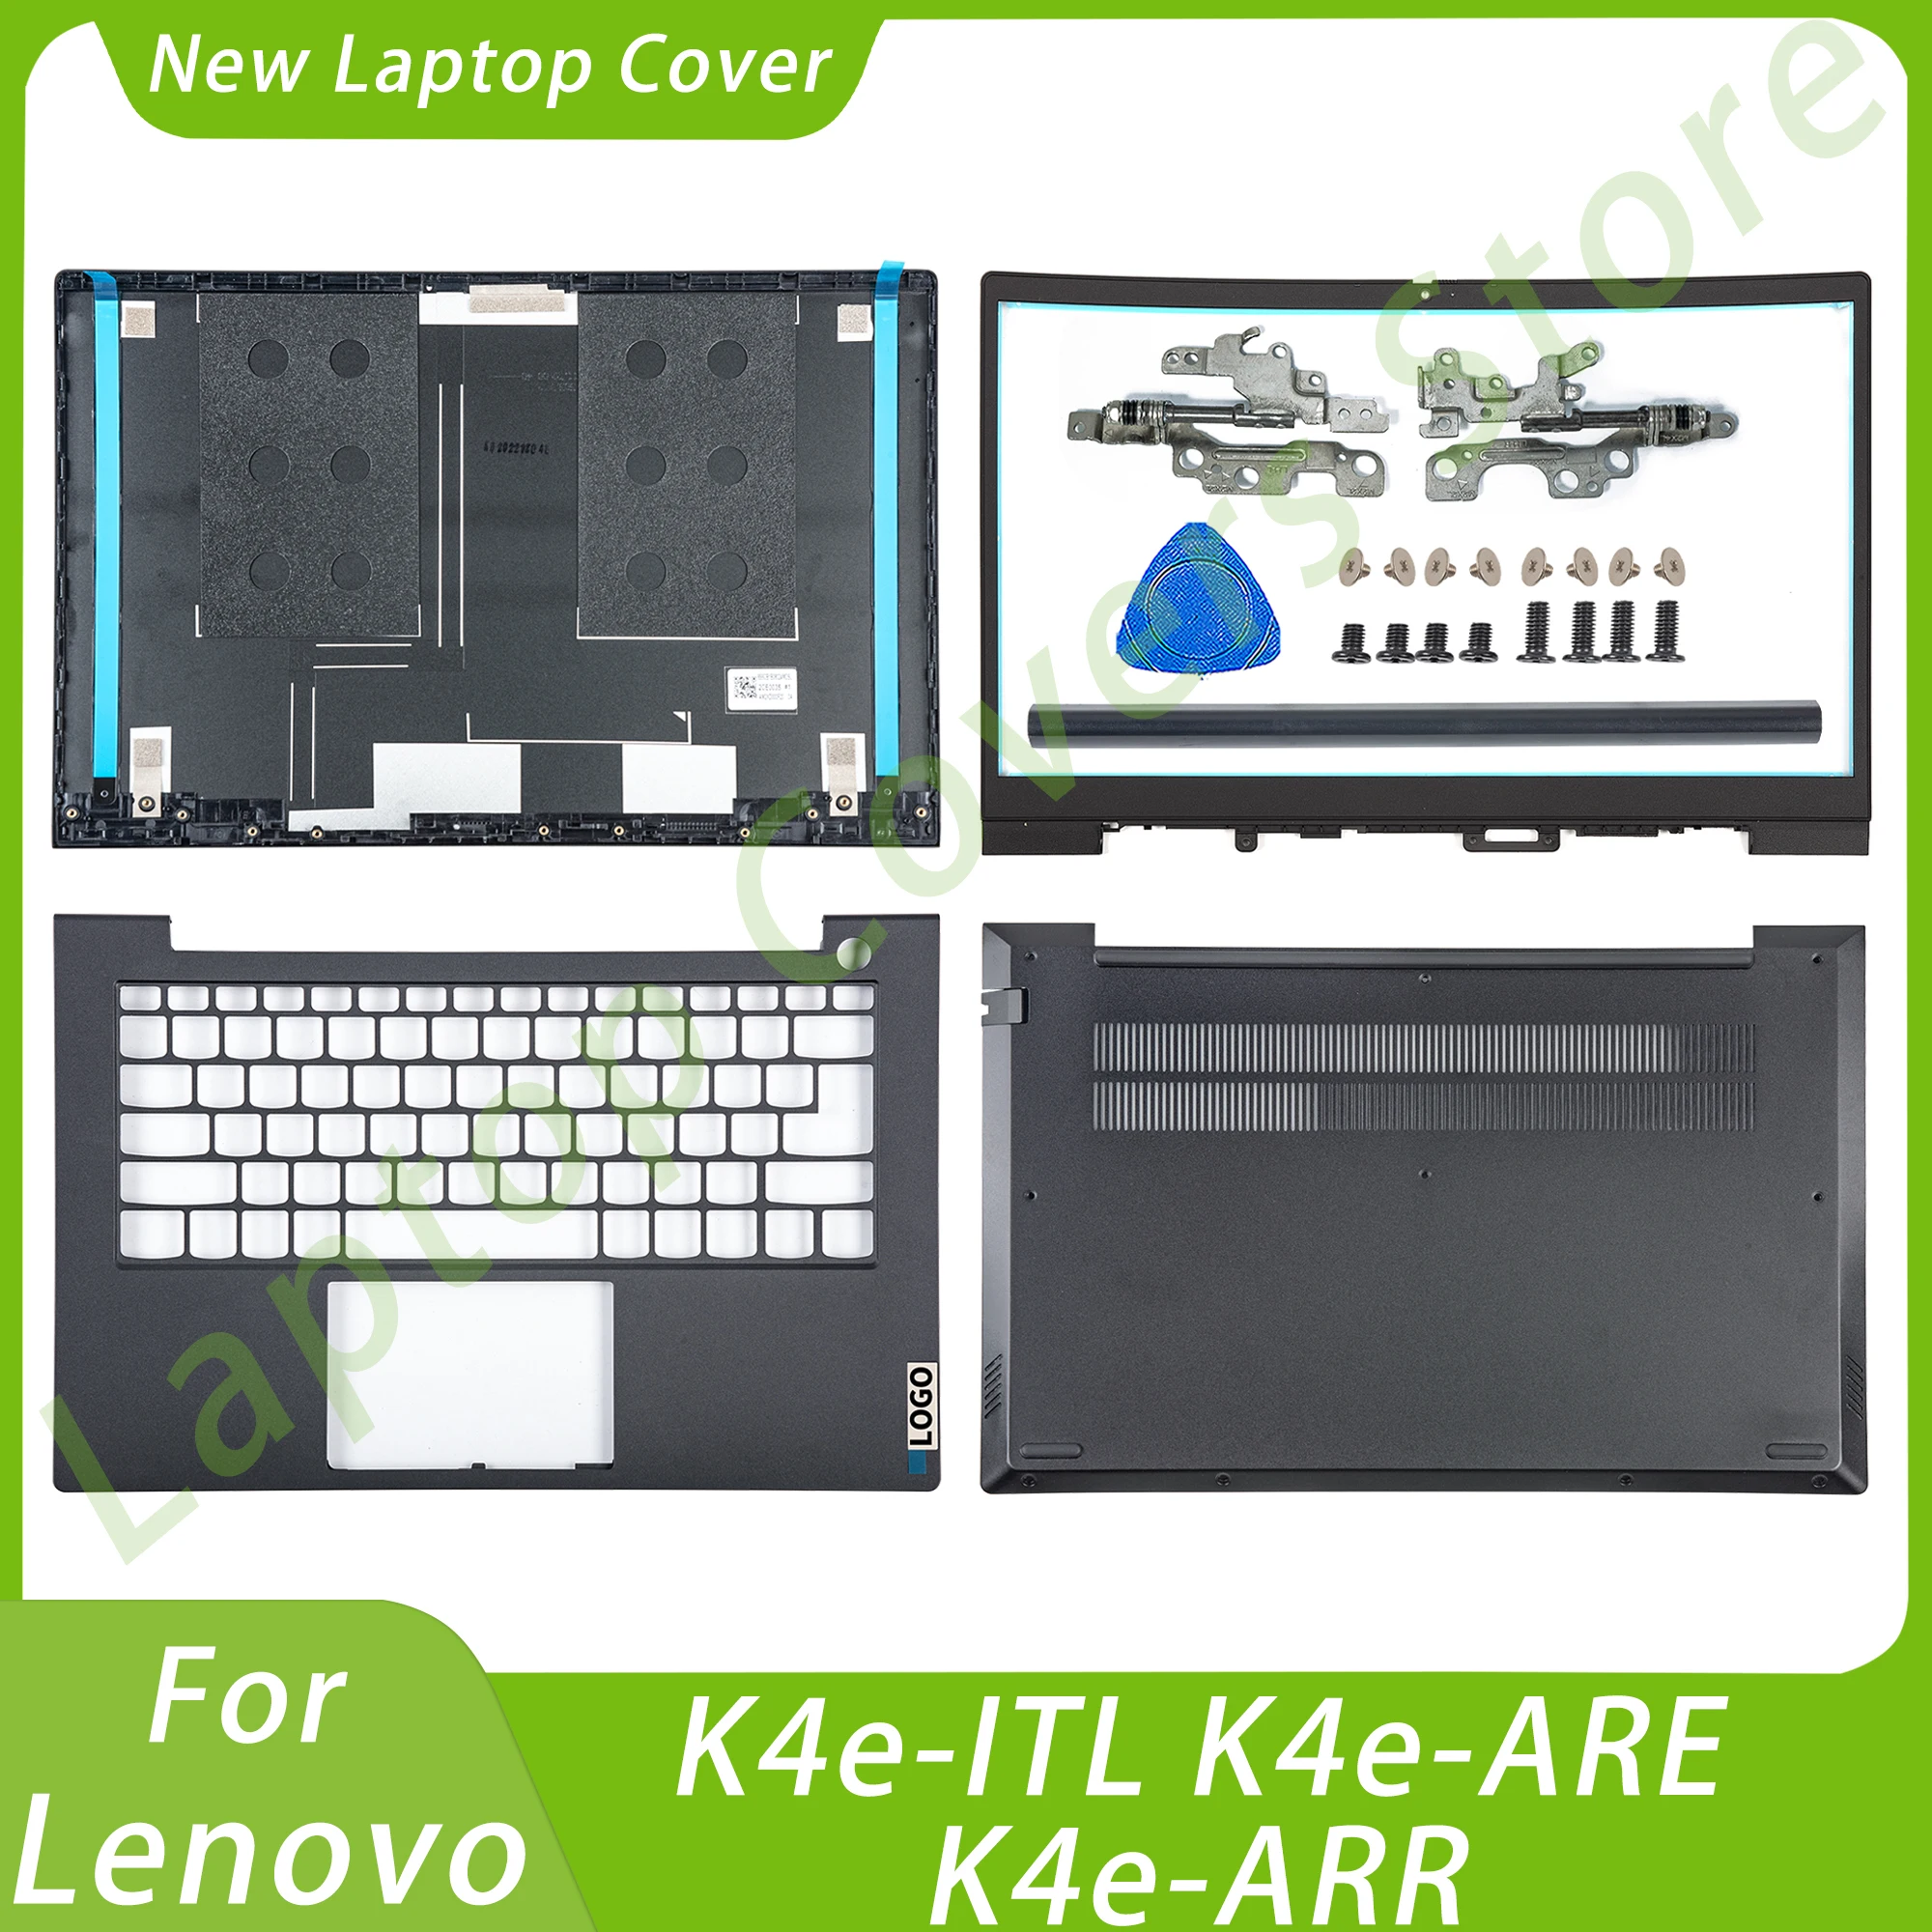 

Чехлы для ноутбуков Lenovo K4e-ITL K4e-ARE K4e-ARR, задняя крышка ЖК-дисплея, передняя панель, нижние петли, запасная крышка, серый, 15,6 дюйма